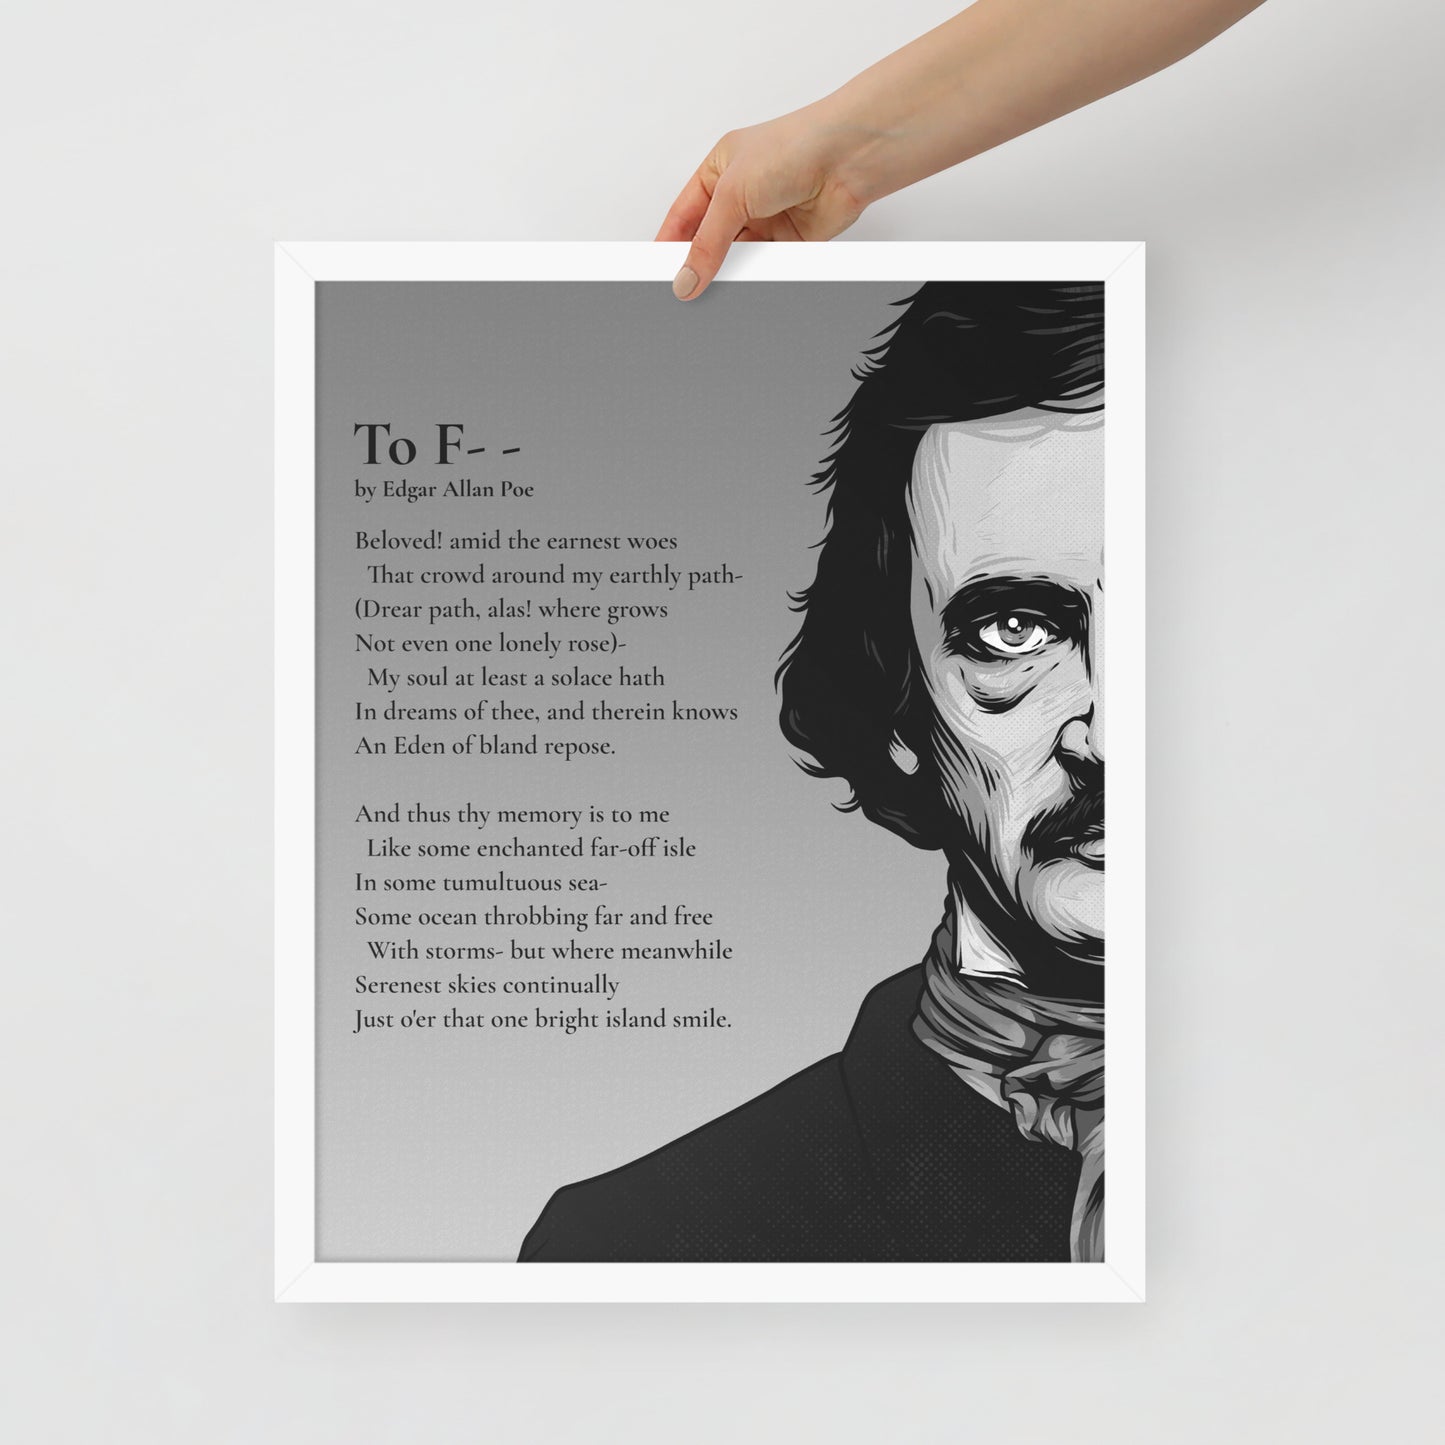 Edgar Allan Poe's 'To F--' Framed Matted Poster - 16 x 20 White Frame